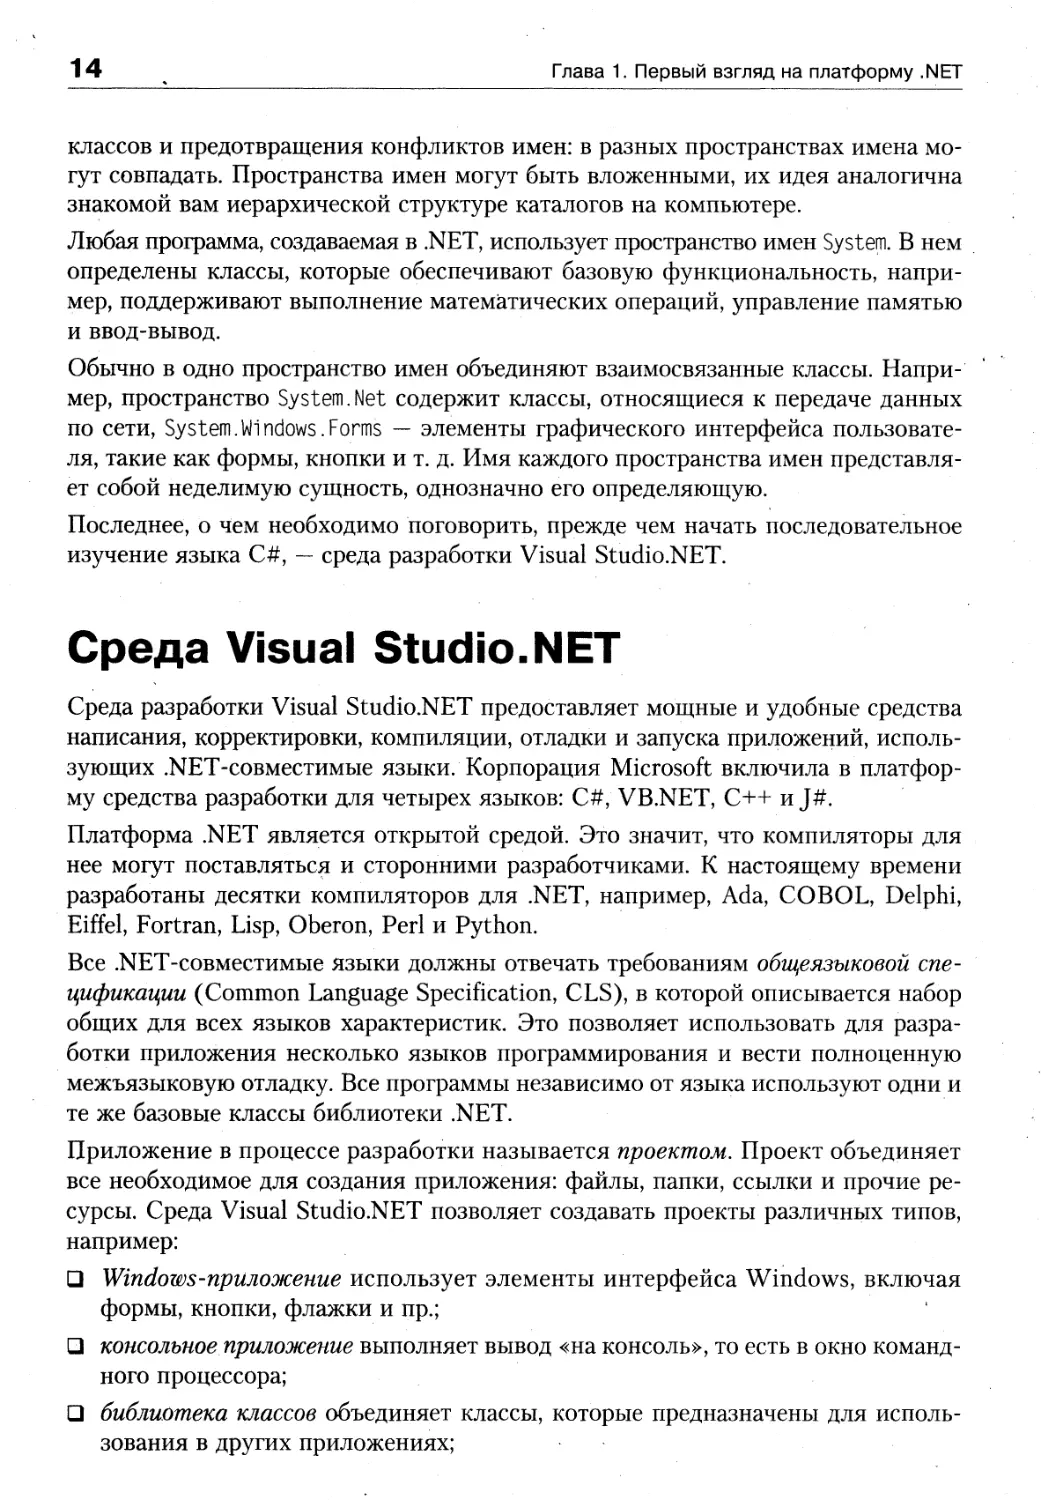 Среда Visual Studio.NET